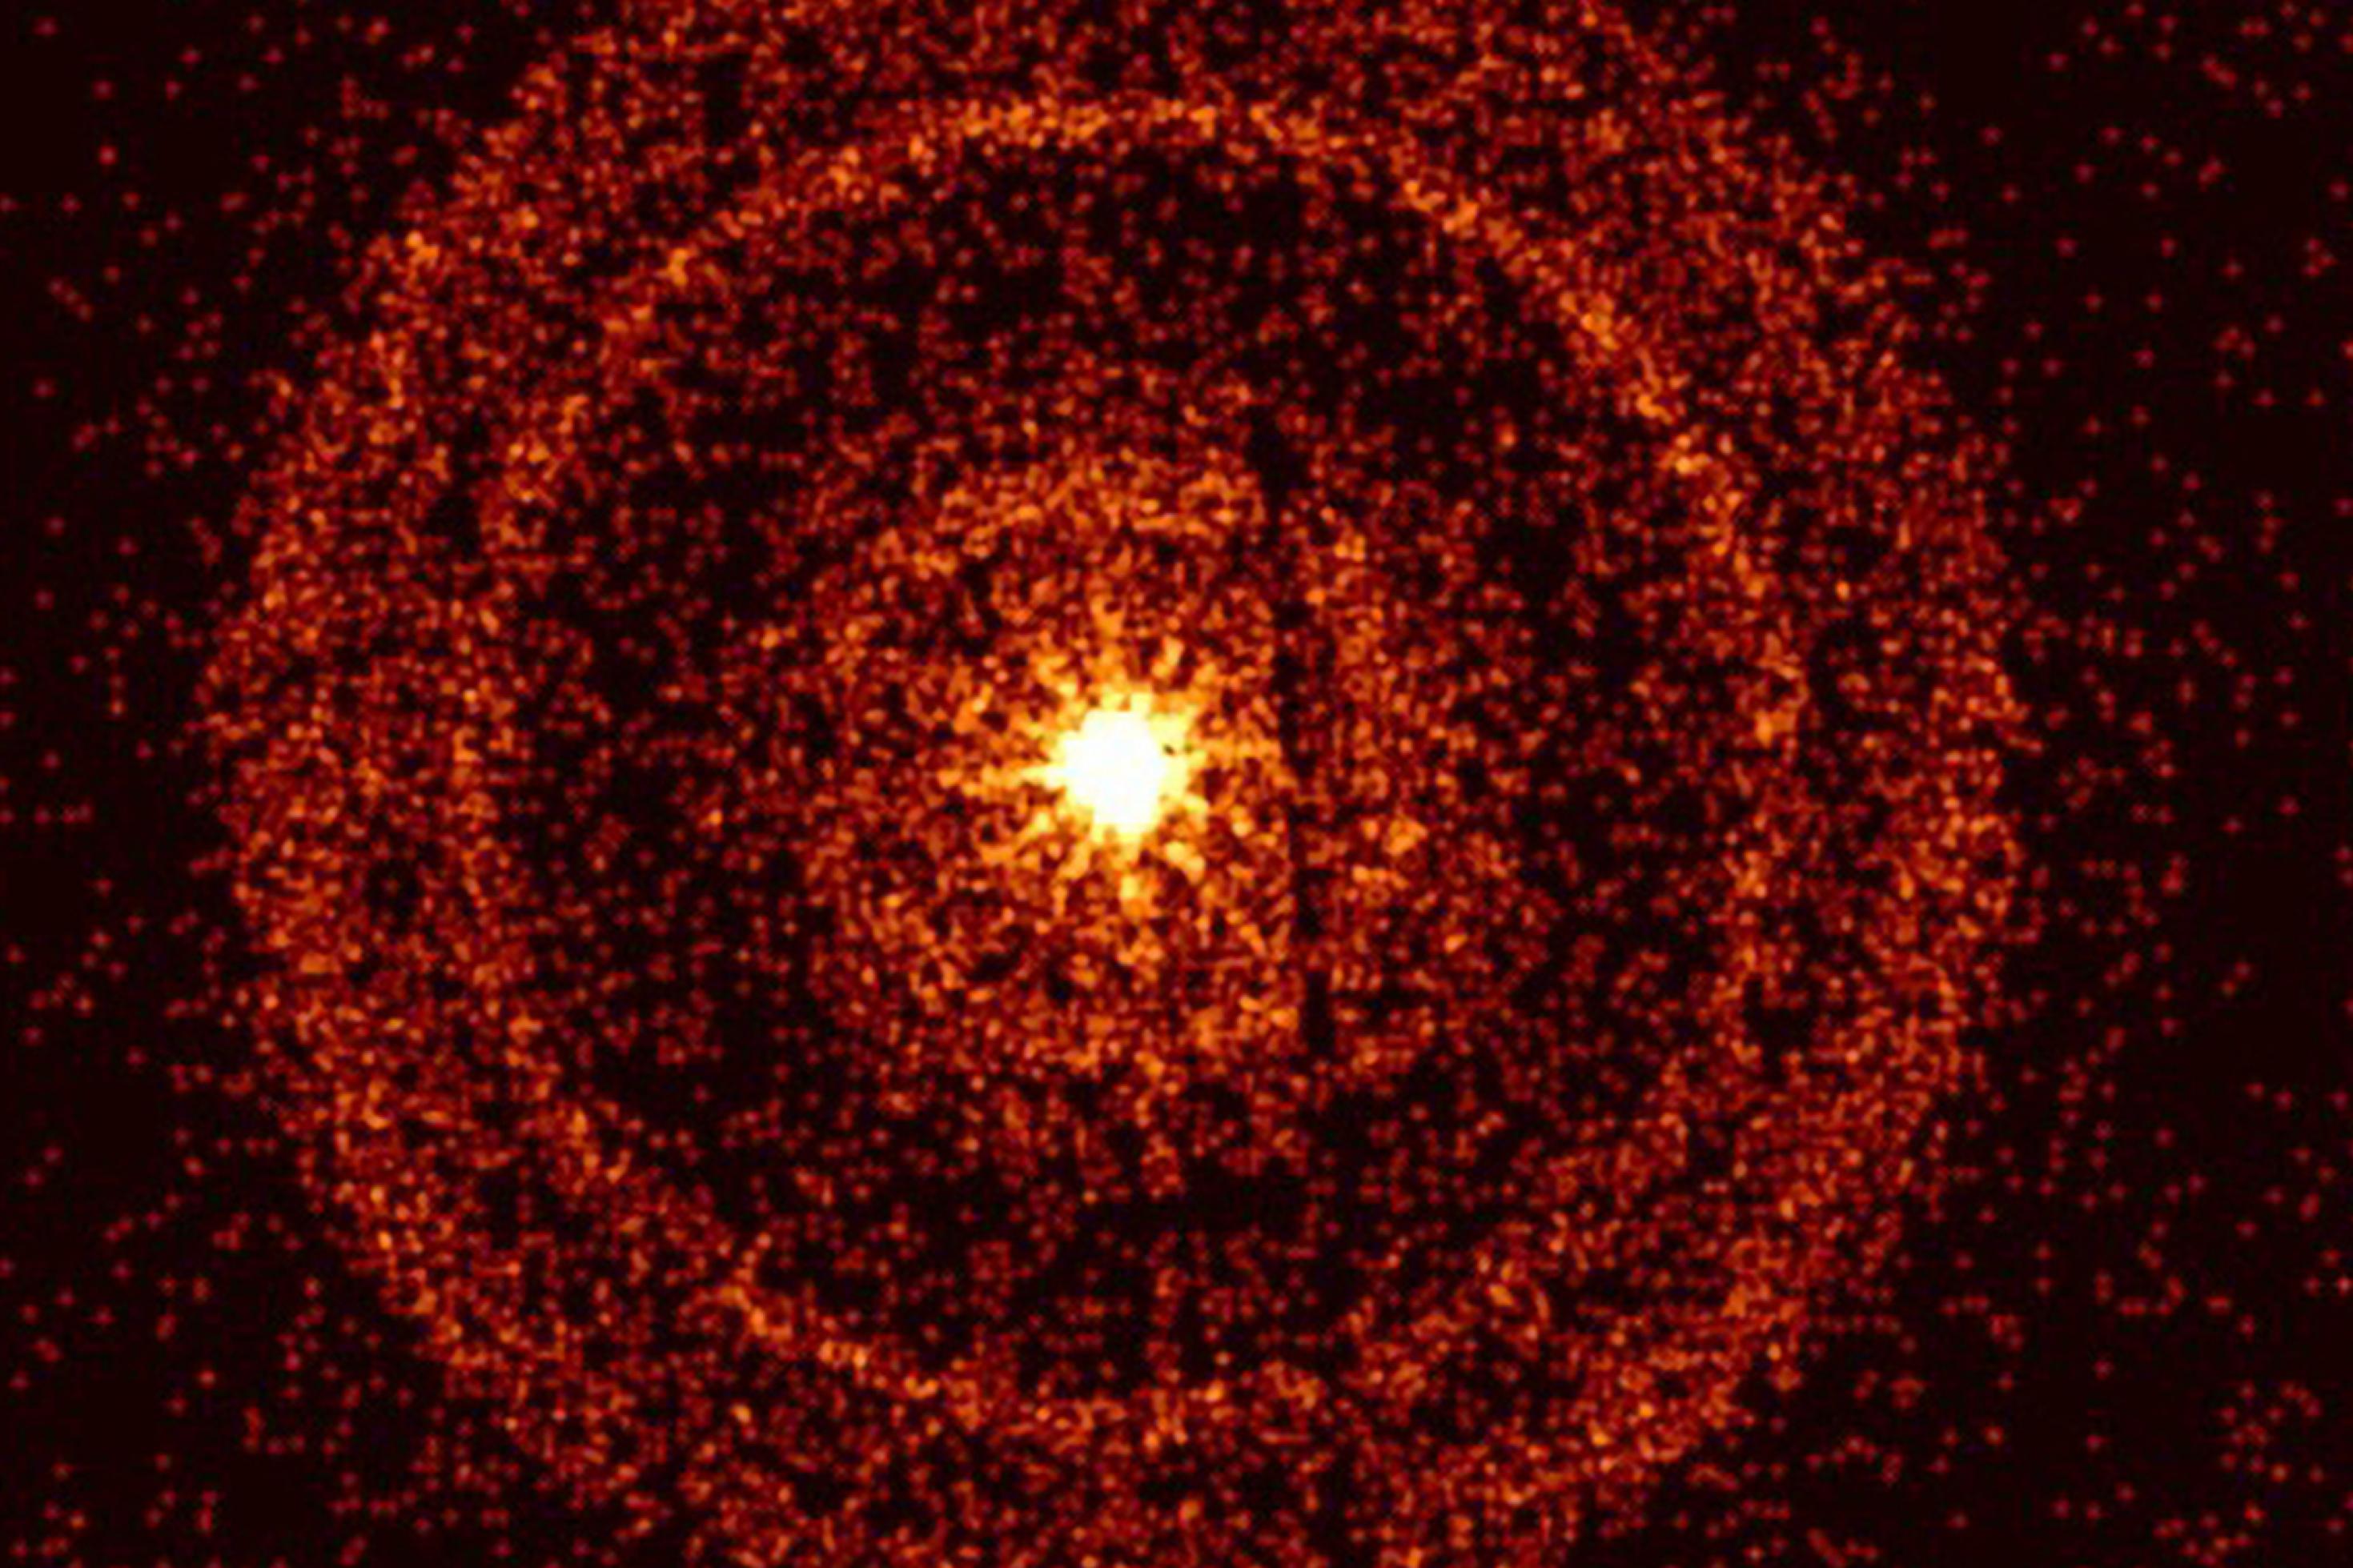 Vor einem schwarzen Hintergrund ist im Zentrum ein orange-gelblicher Kreis zu sehen, umgeben von mehreren konzentrischen Ringen, die ebenfalls orange-gelblich eingefärbt sind und deren Dichte nach außen hin abnimmt.